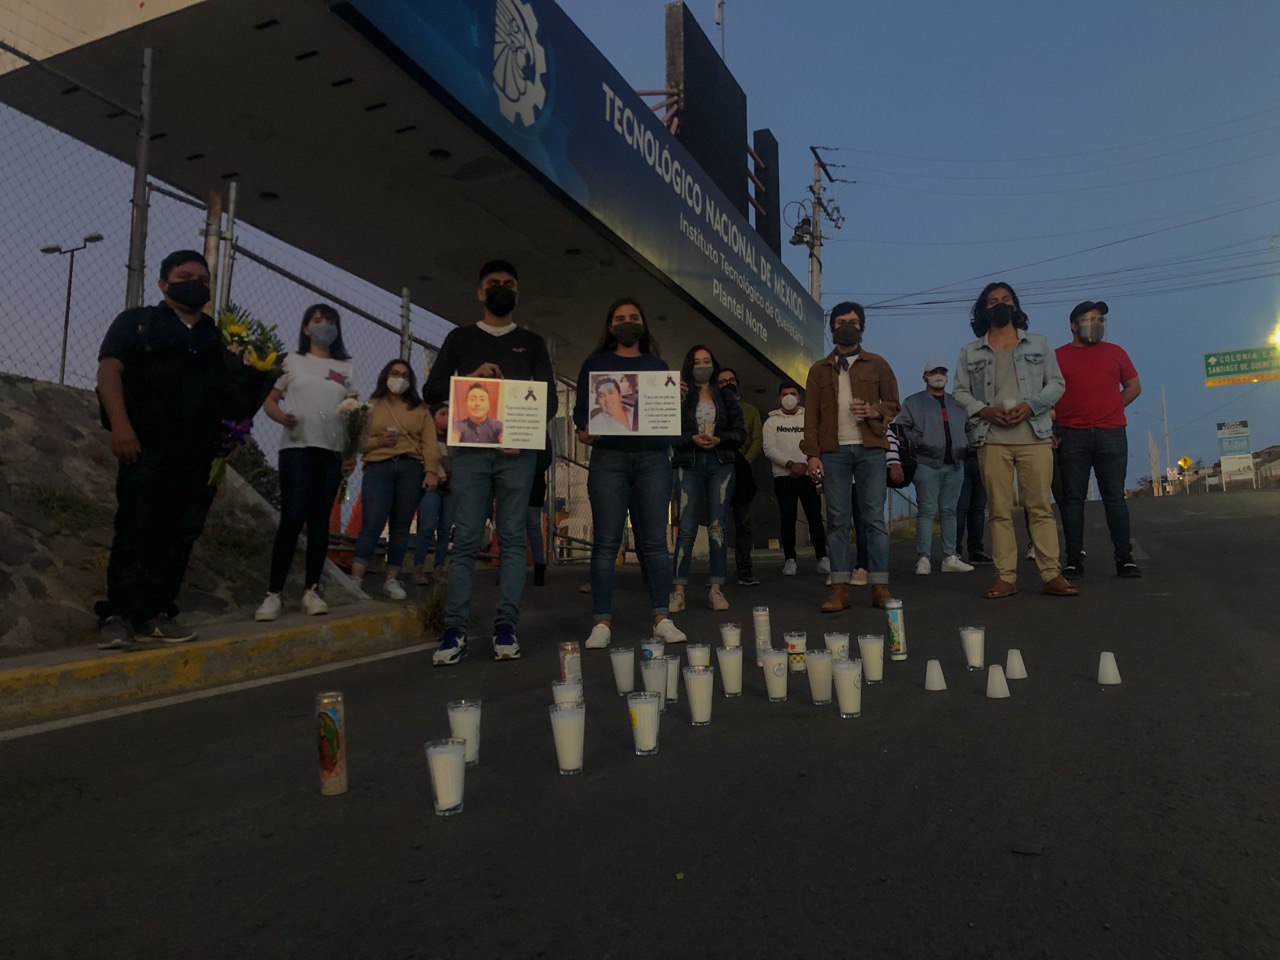 Exigen justicia para estudiantes del Tecnol&oacute;gico de Quer&eacute;taro asesinados en Guanajuato